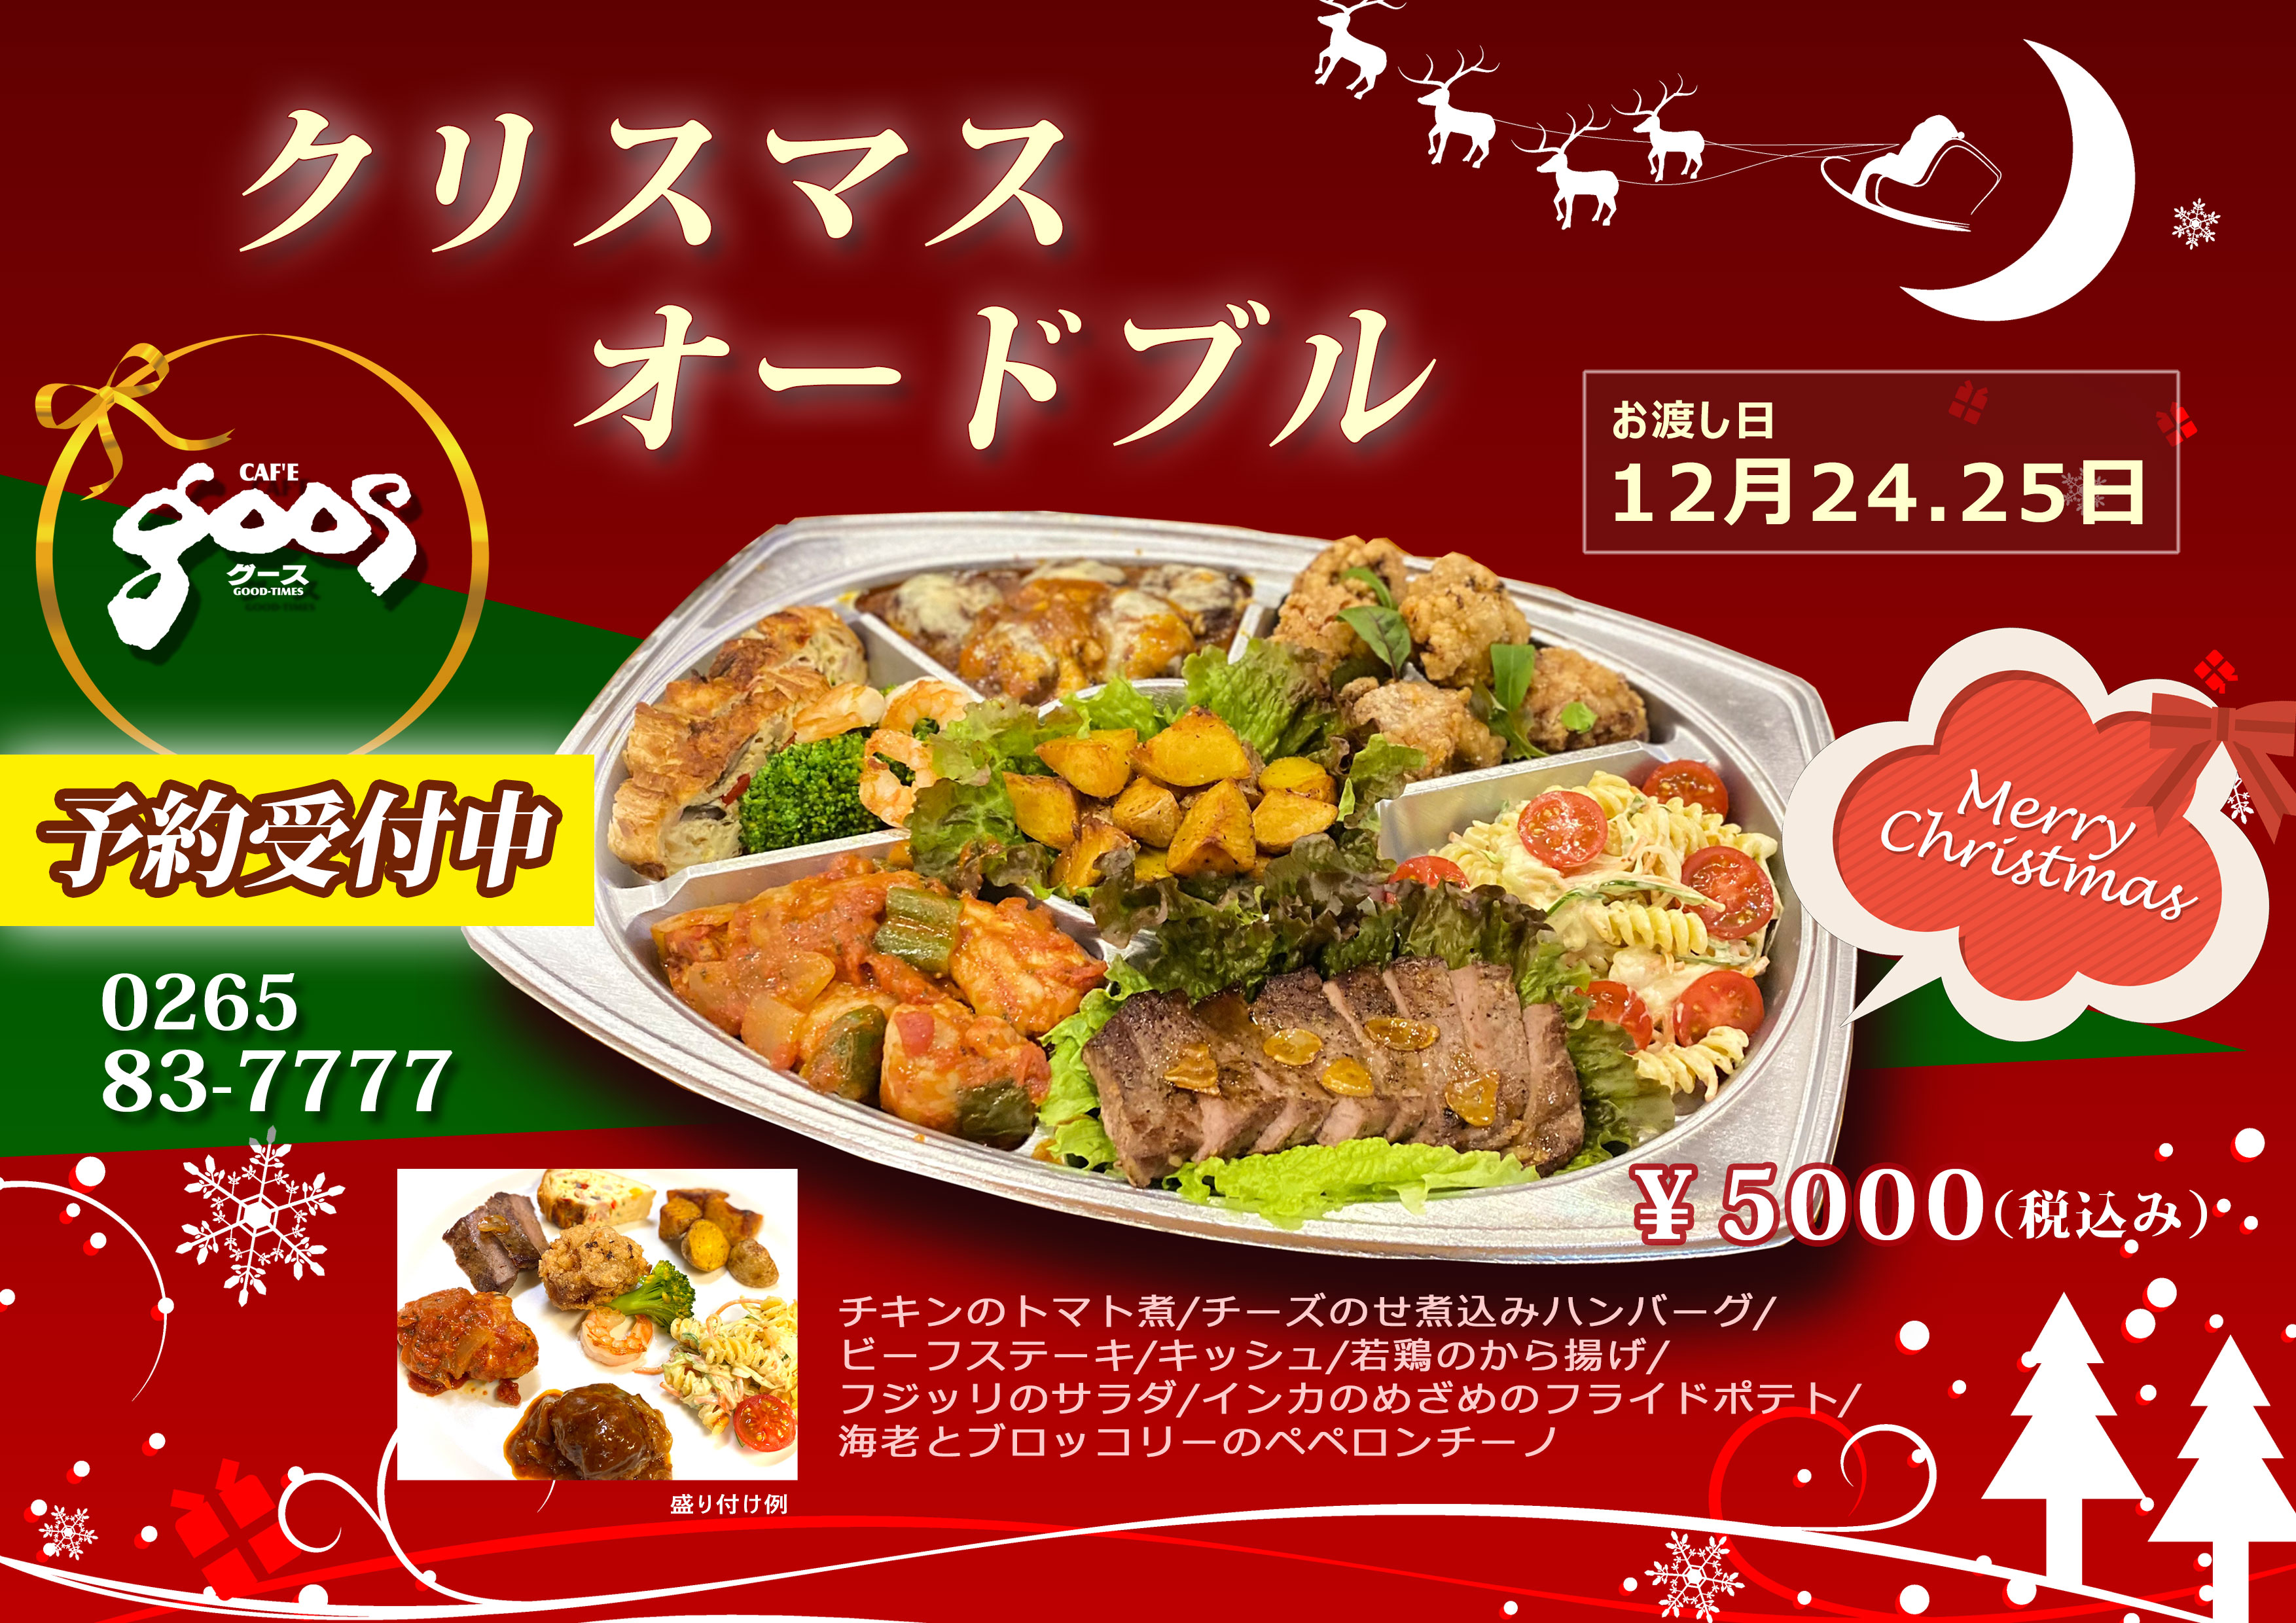 クリスマスオードブル 予約開始のお知らせ Cafe Goos 自家焙煎コーヒーとクラシックカー カフェ グース 長野県駒ヶ根市